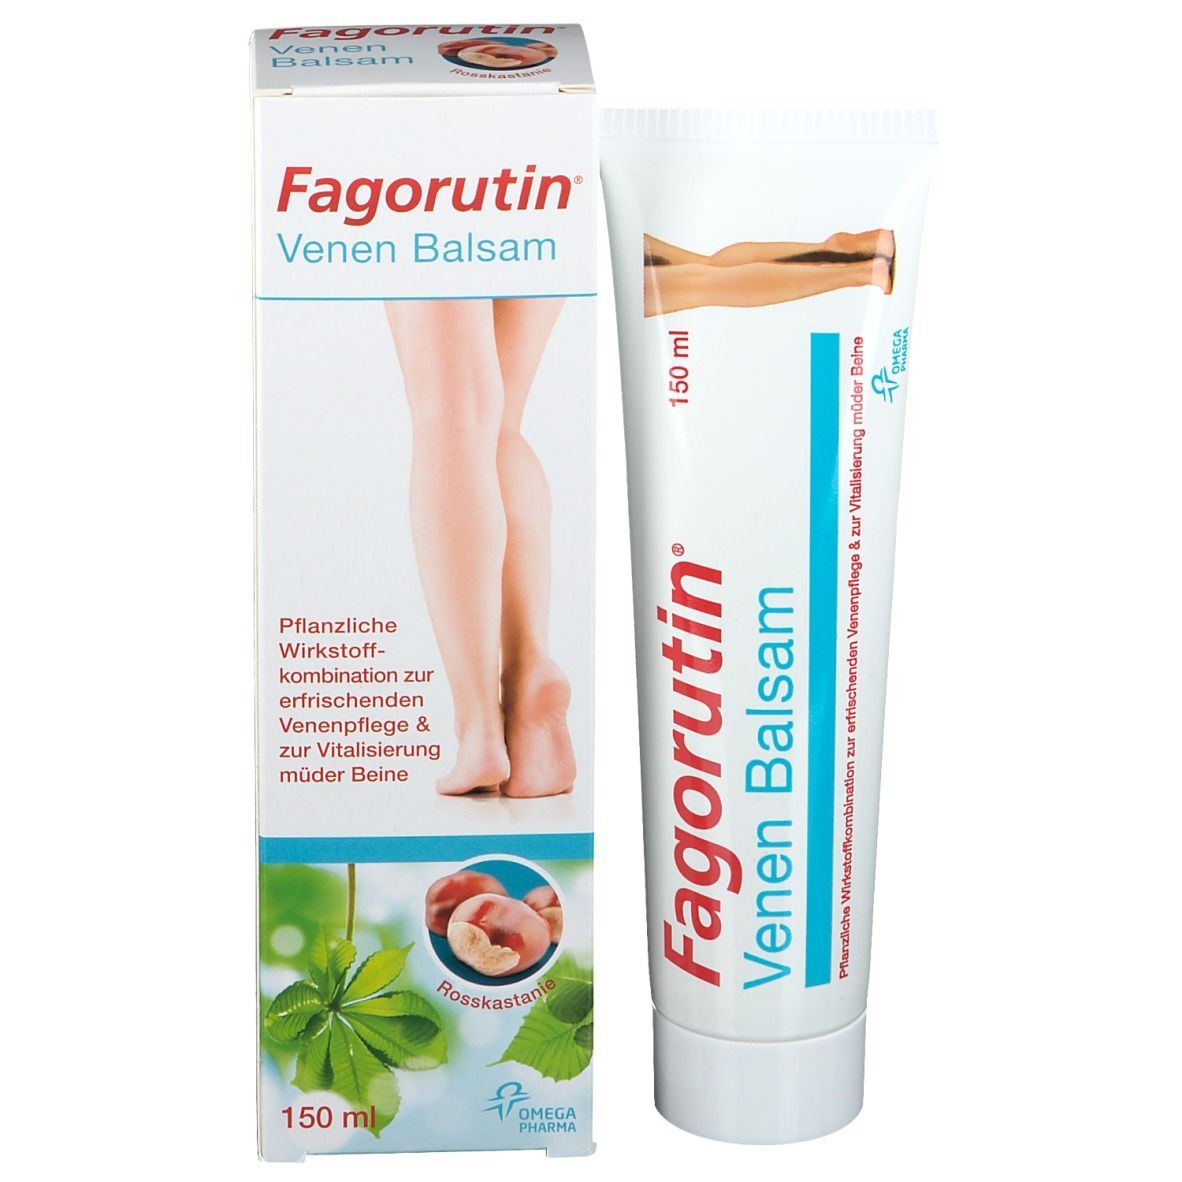 Fagorutin® Venen Balsam